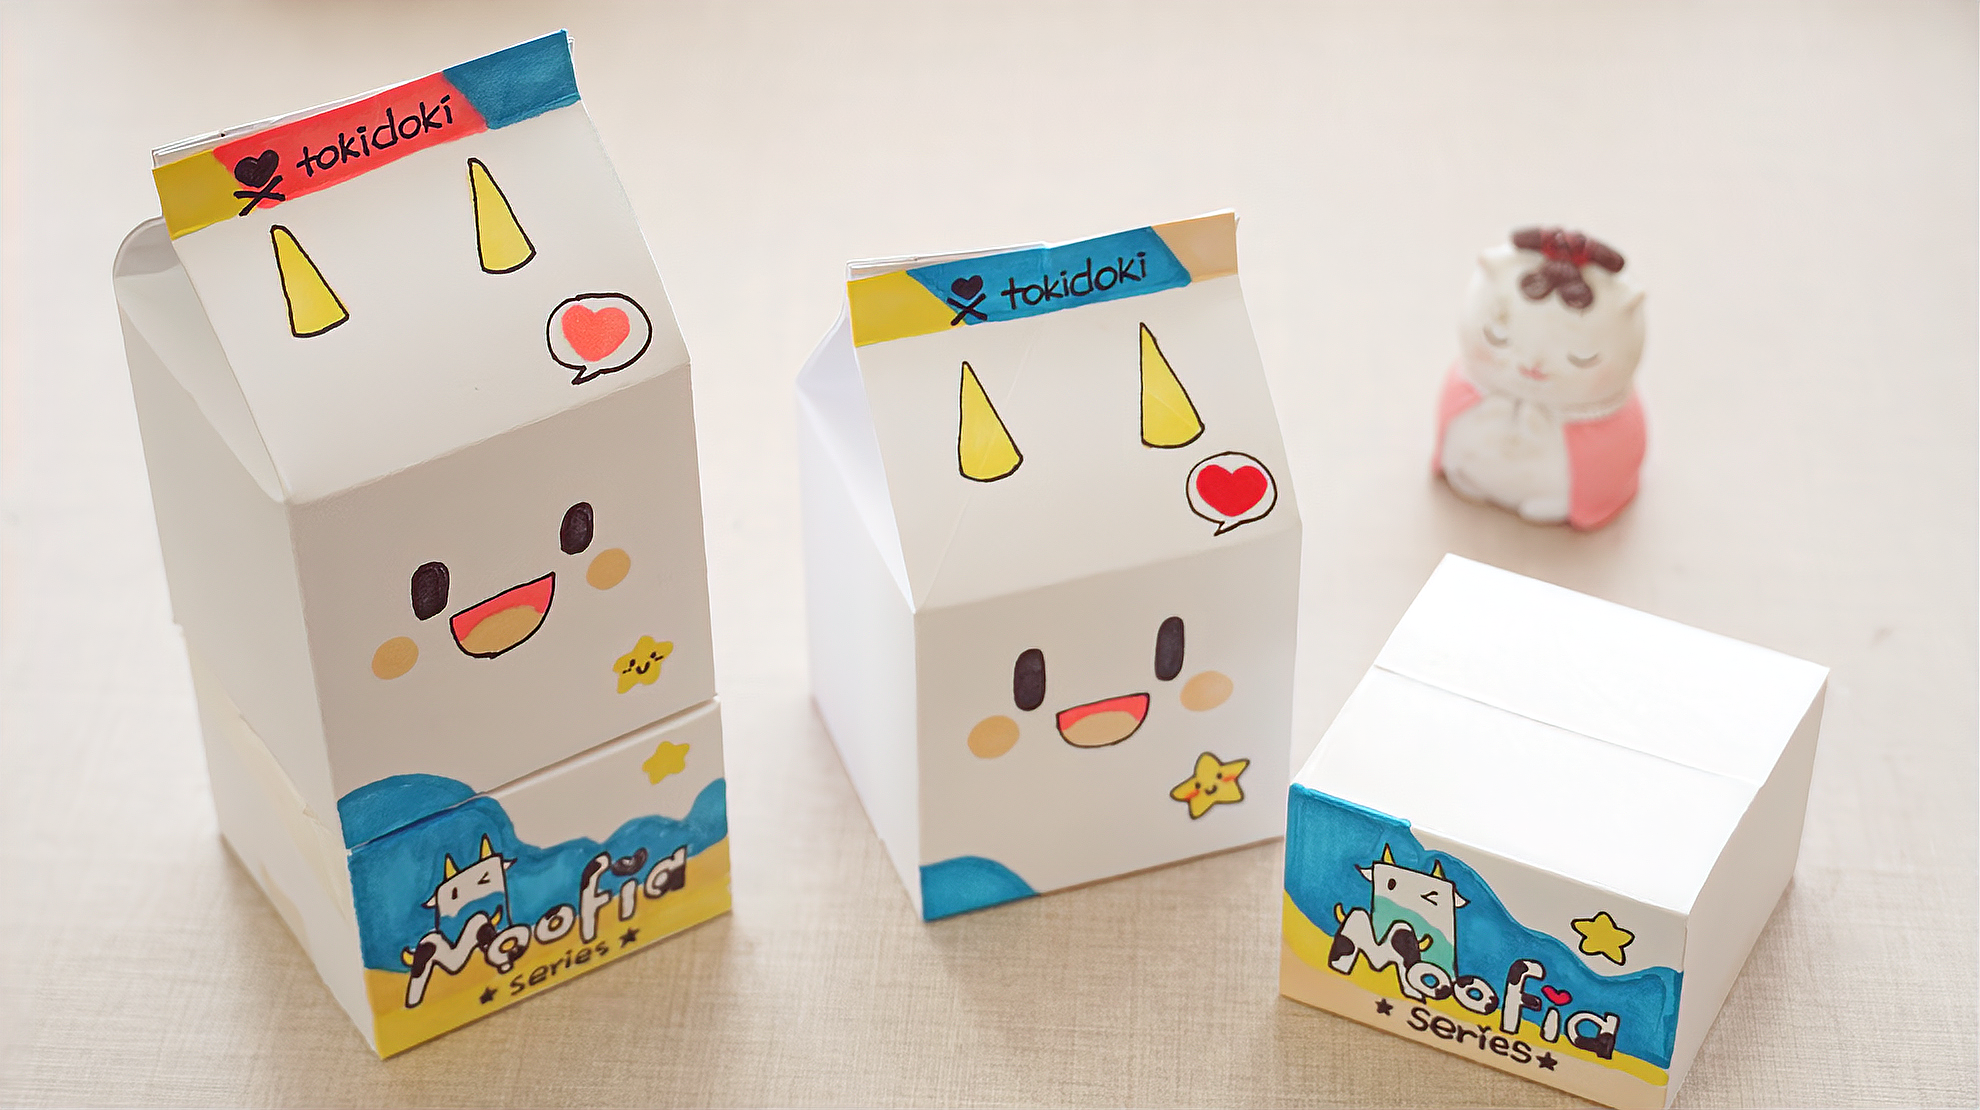 用卡纸diy双层的牛奶盲盒,步骤挺简单,猜猜你能拆到什么?